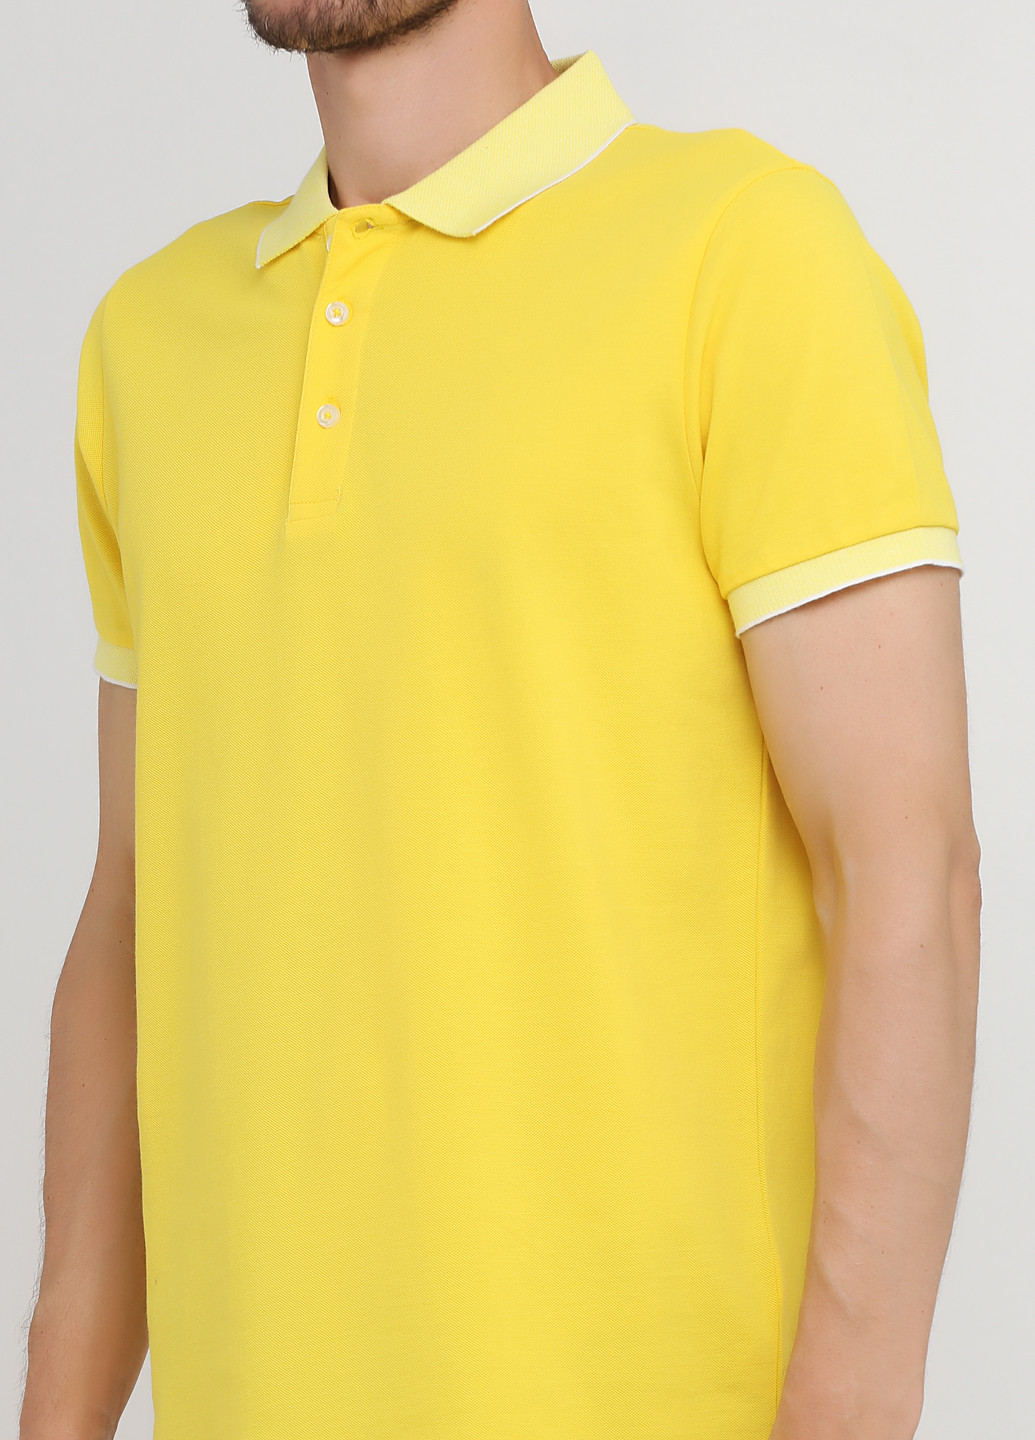 Желтая футболка-поло для мужчин Madoc Jeans однотонная